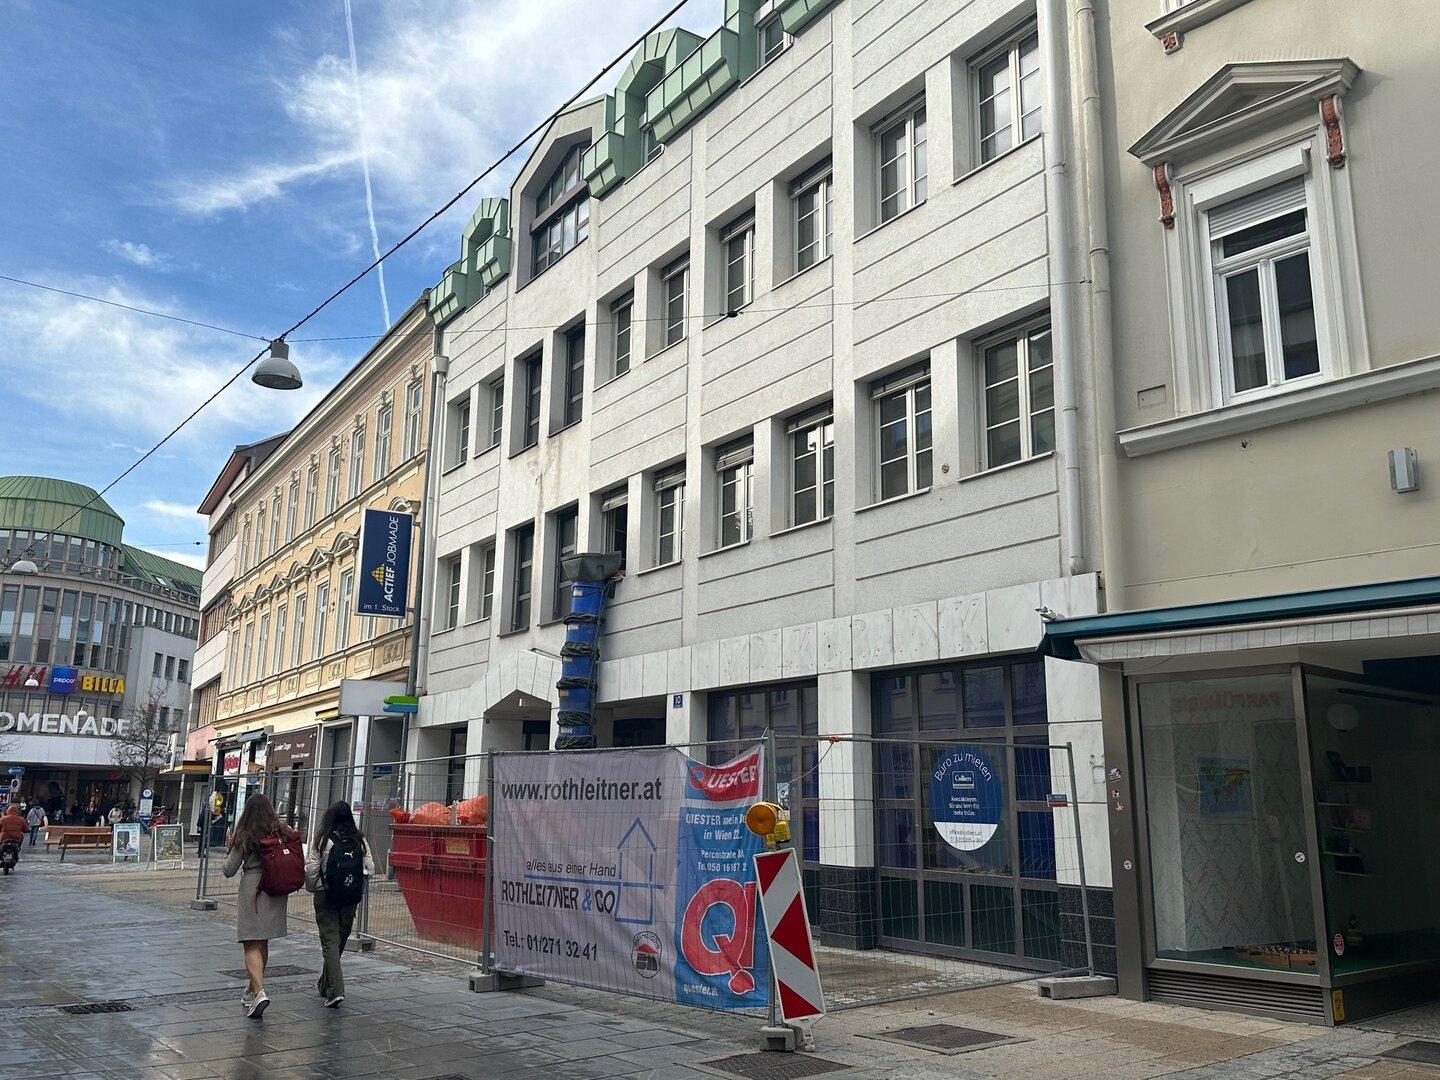 Welche große Hotelkette jetzt in St. Pölten aktiv werden möchte